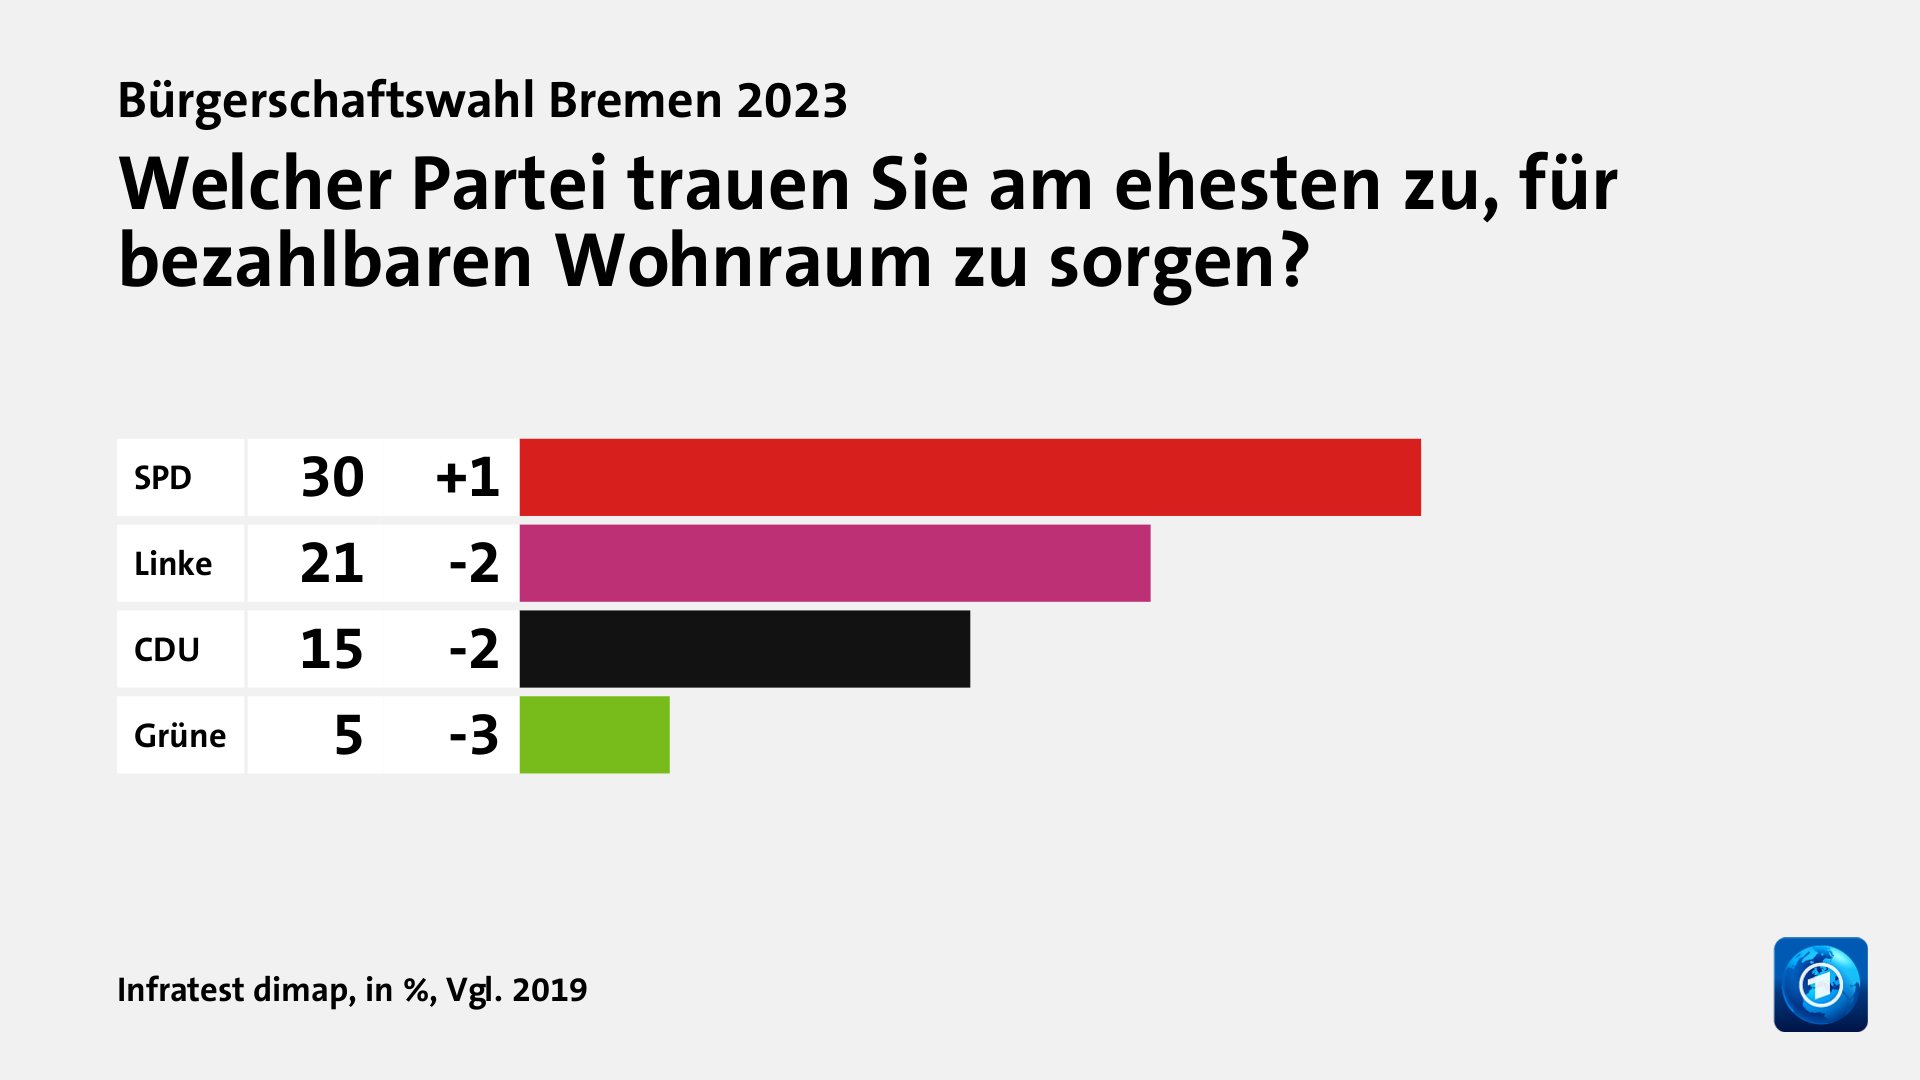 Welcher Partei trauen Sie am ehesten zu, für bezahlbaren Wohnraum zu sorgen?, in %, Vgl. 2019: SPD 30, Linke 21, CDU 15, Grüne 5, Quelle: Infratest dimap